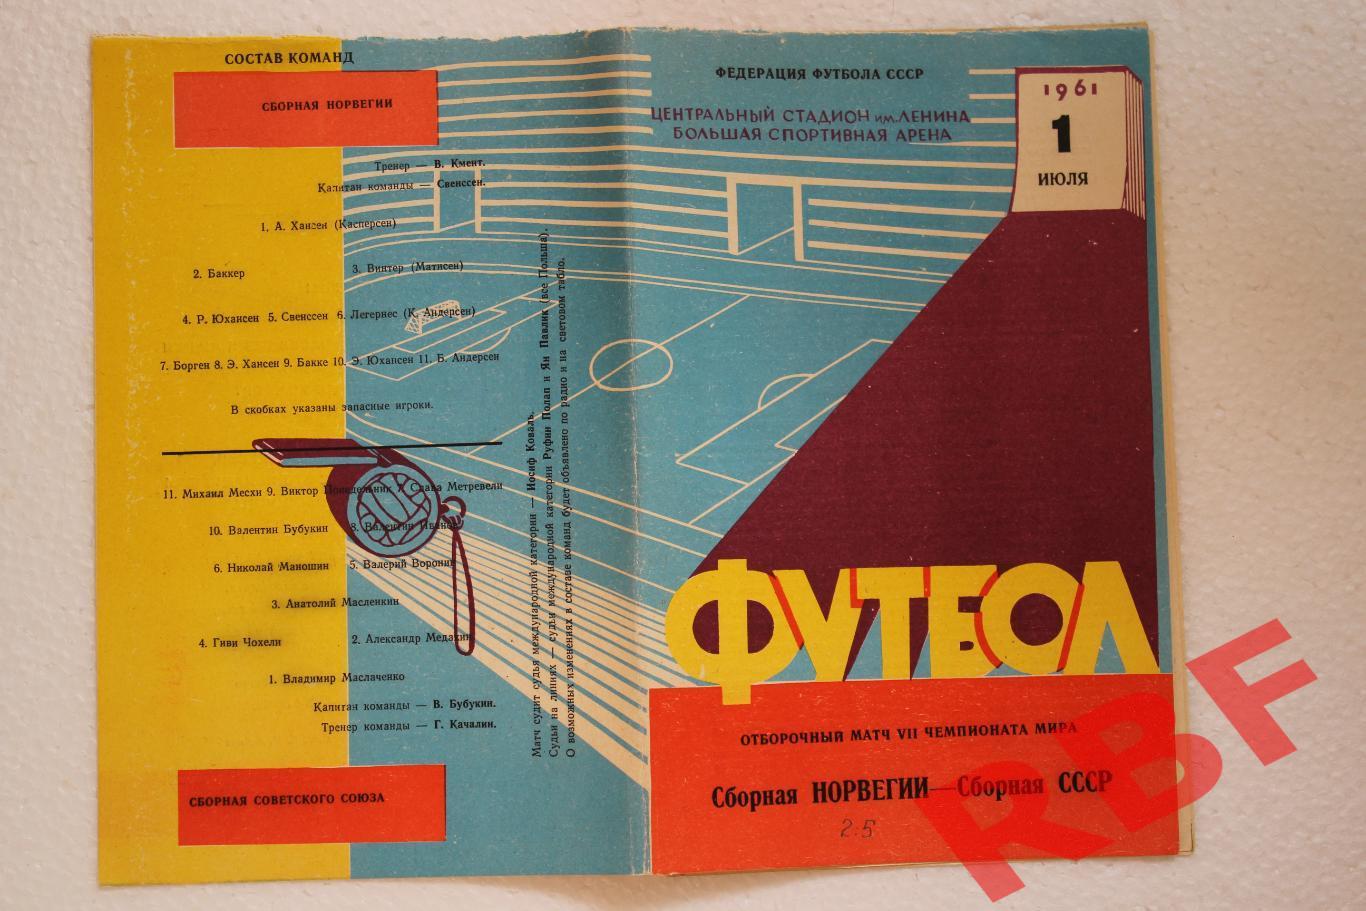 СССР - Норвегия,1 июля 1961.Отборочный матч чемпионата мира 4